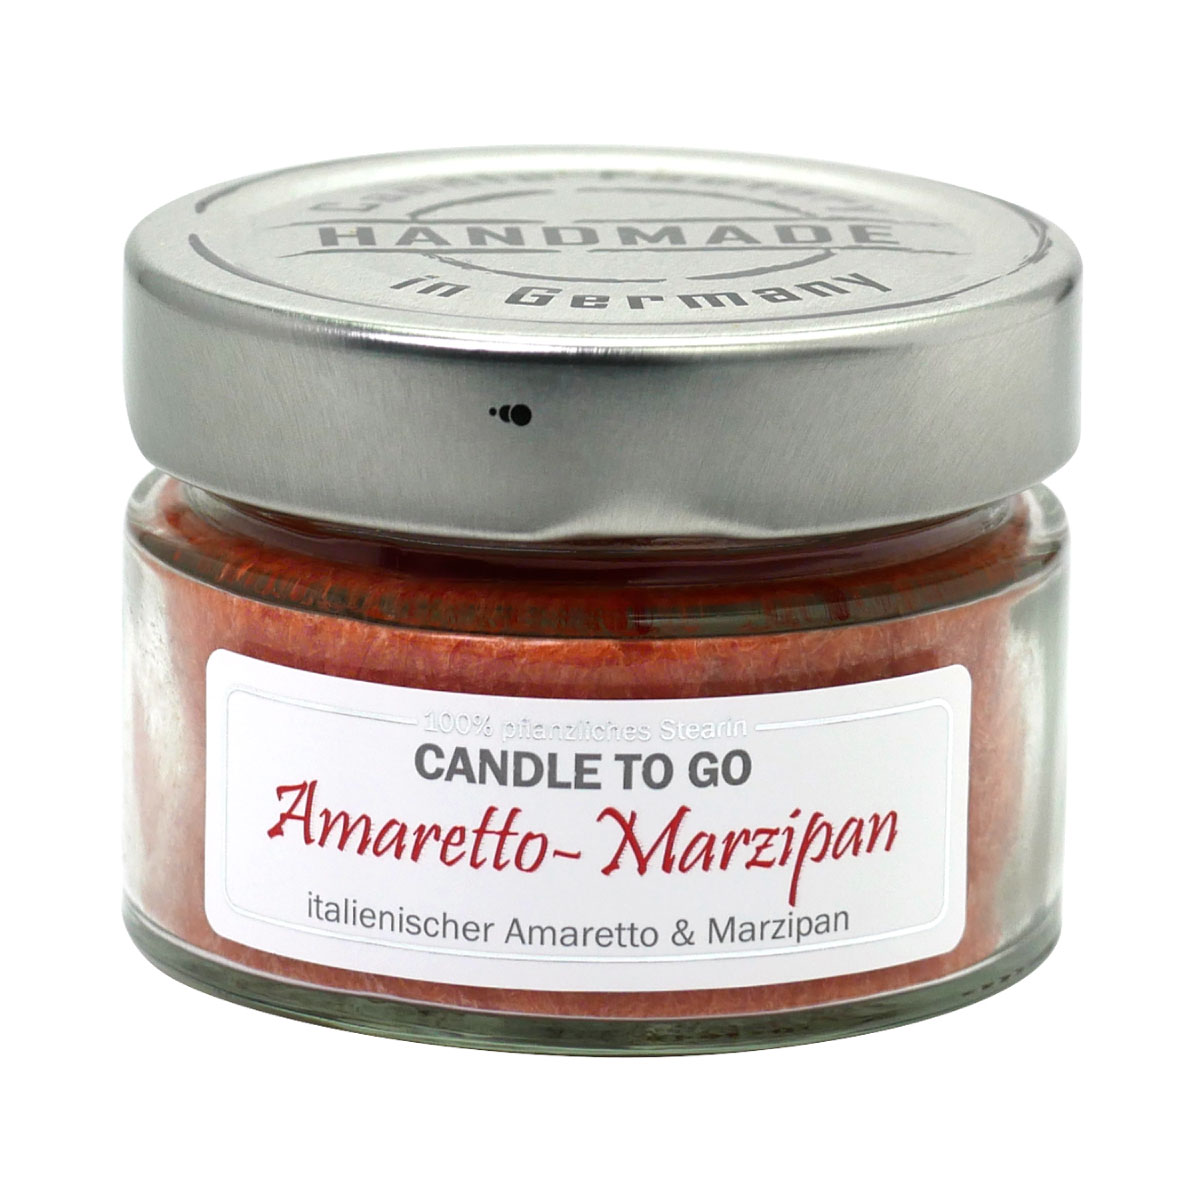 Amaretto Marzipan - Candle to Go die Duftkerze für unterwegs